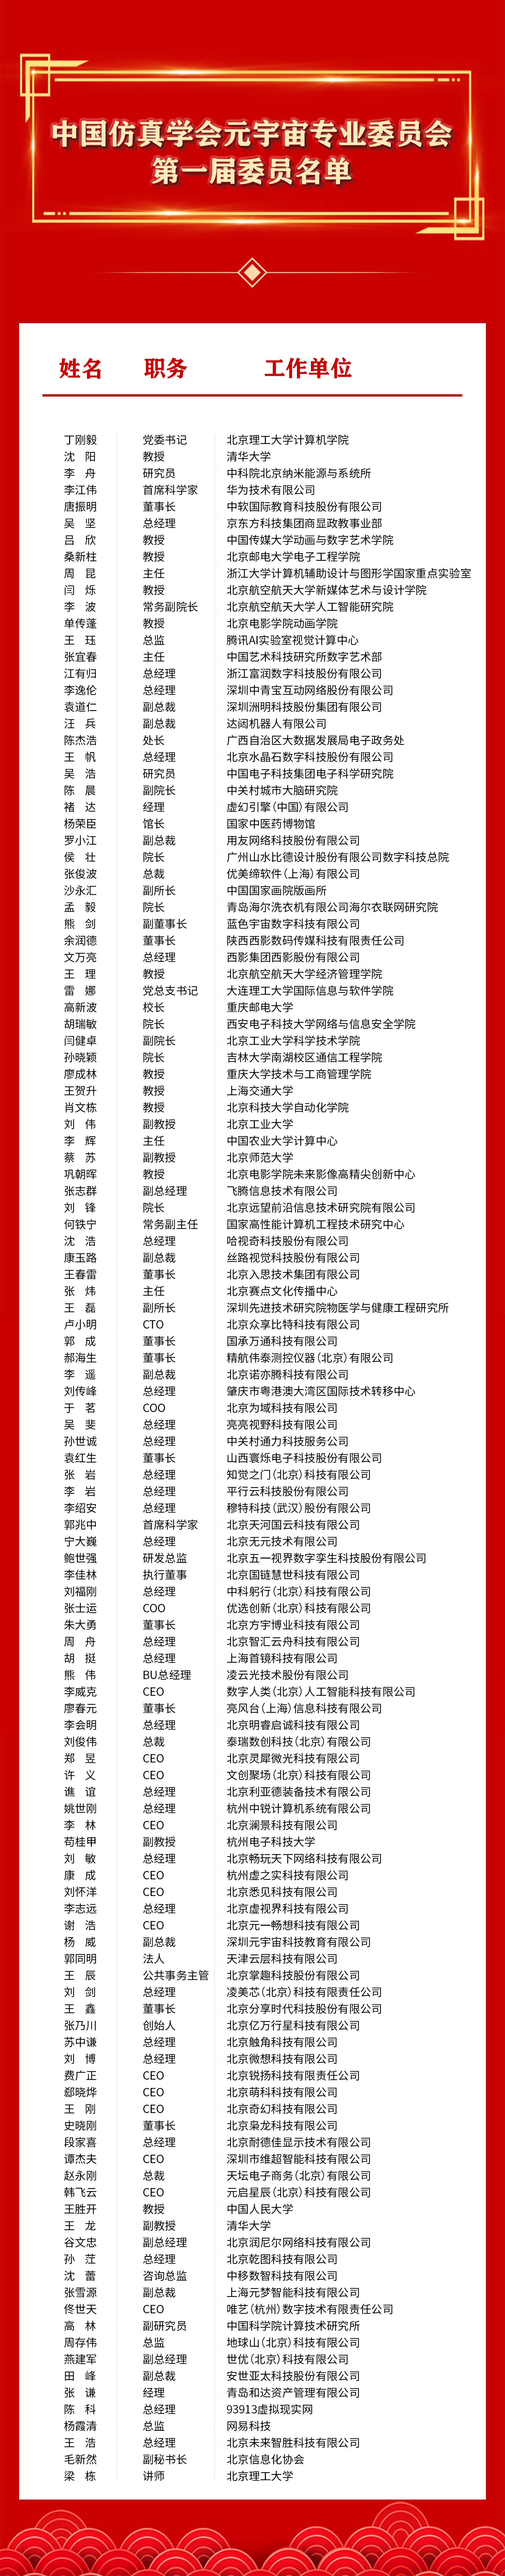 中国仿真学会元宇宙专业委员会委员名单.jpg